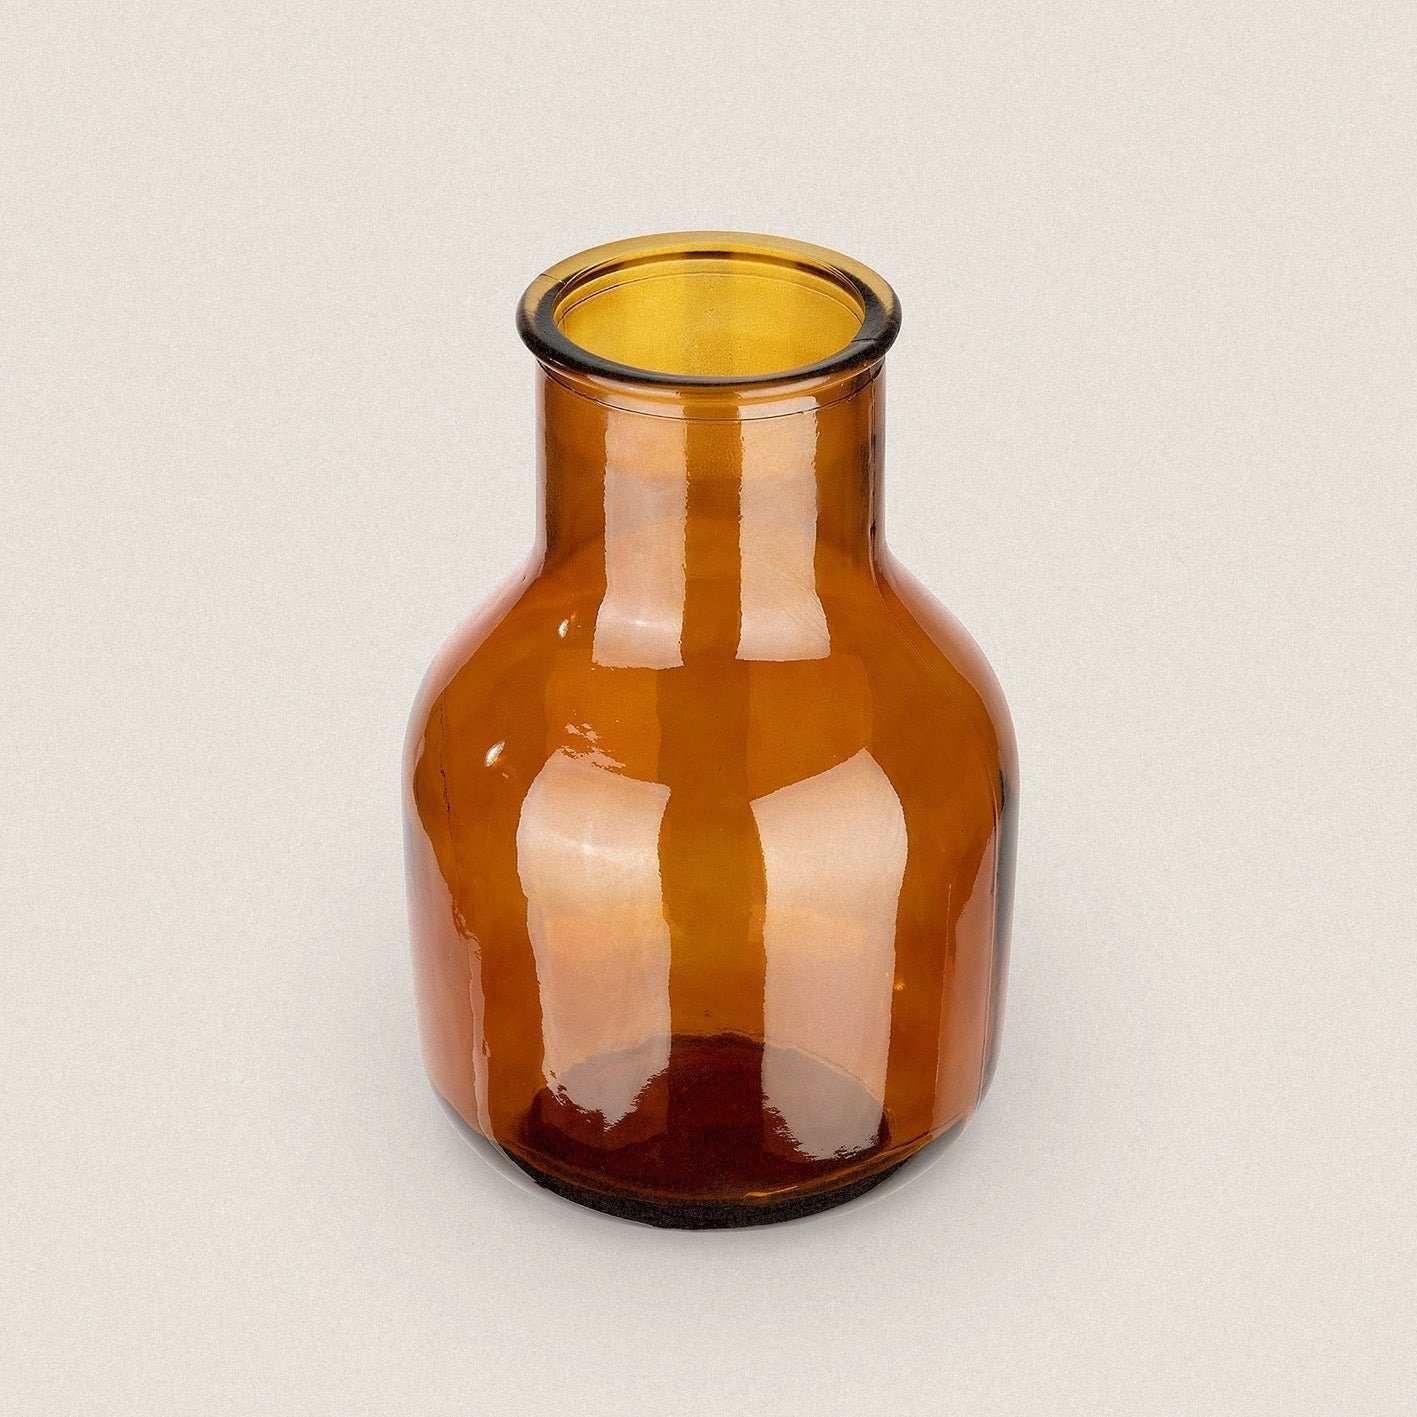 Altglas 100 way up the "Raul", % Tischvase Vase